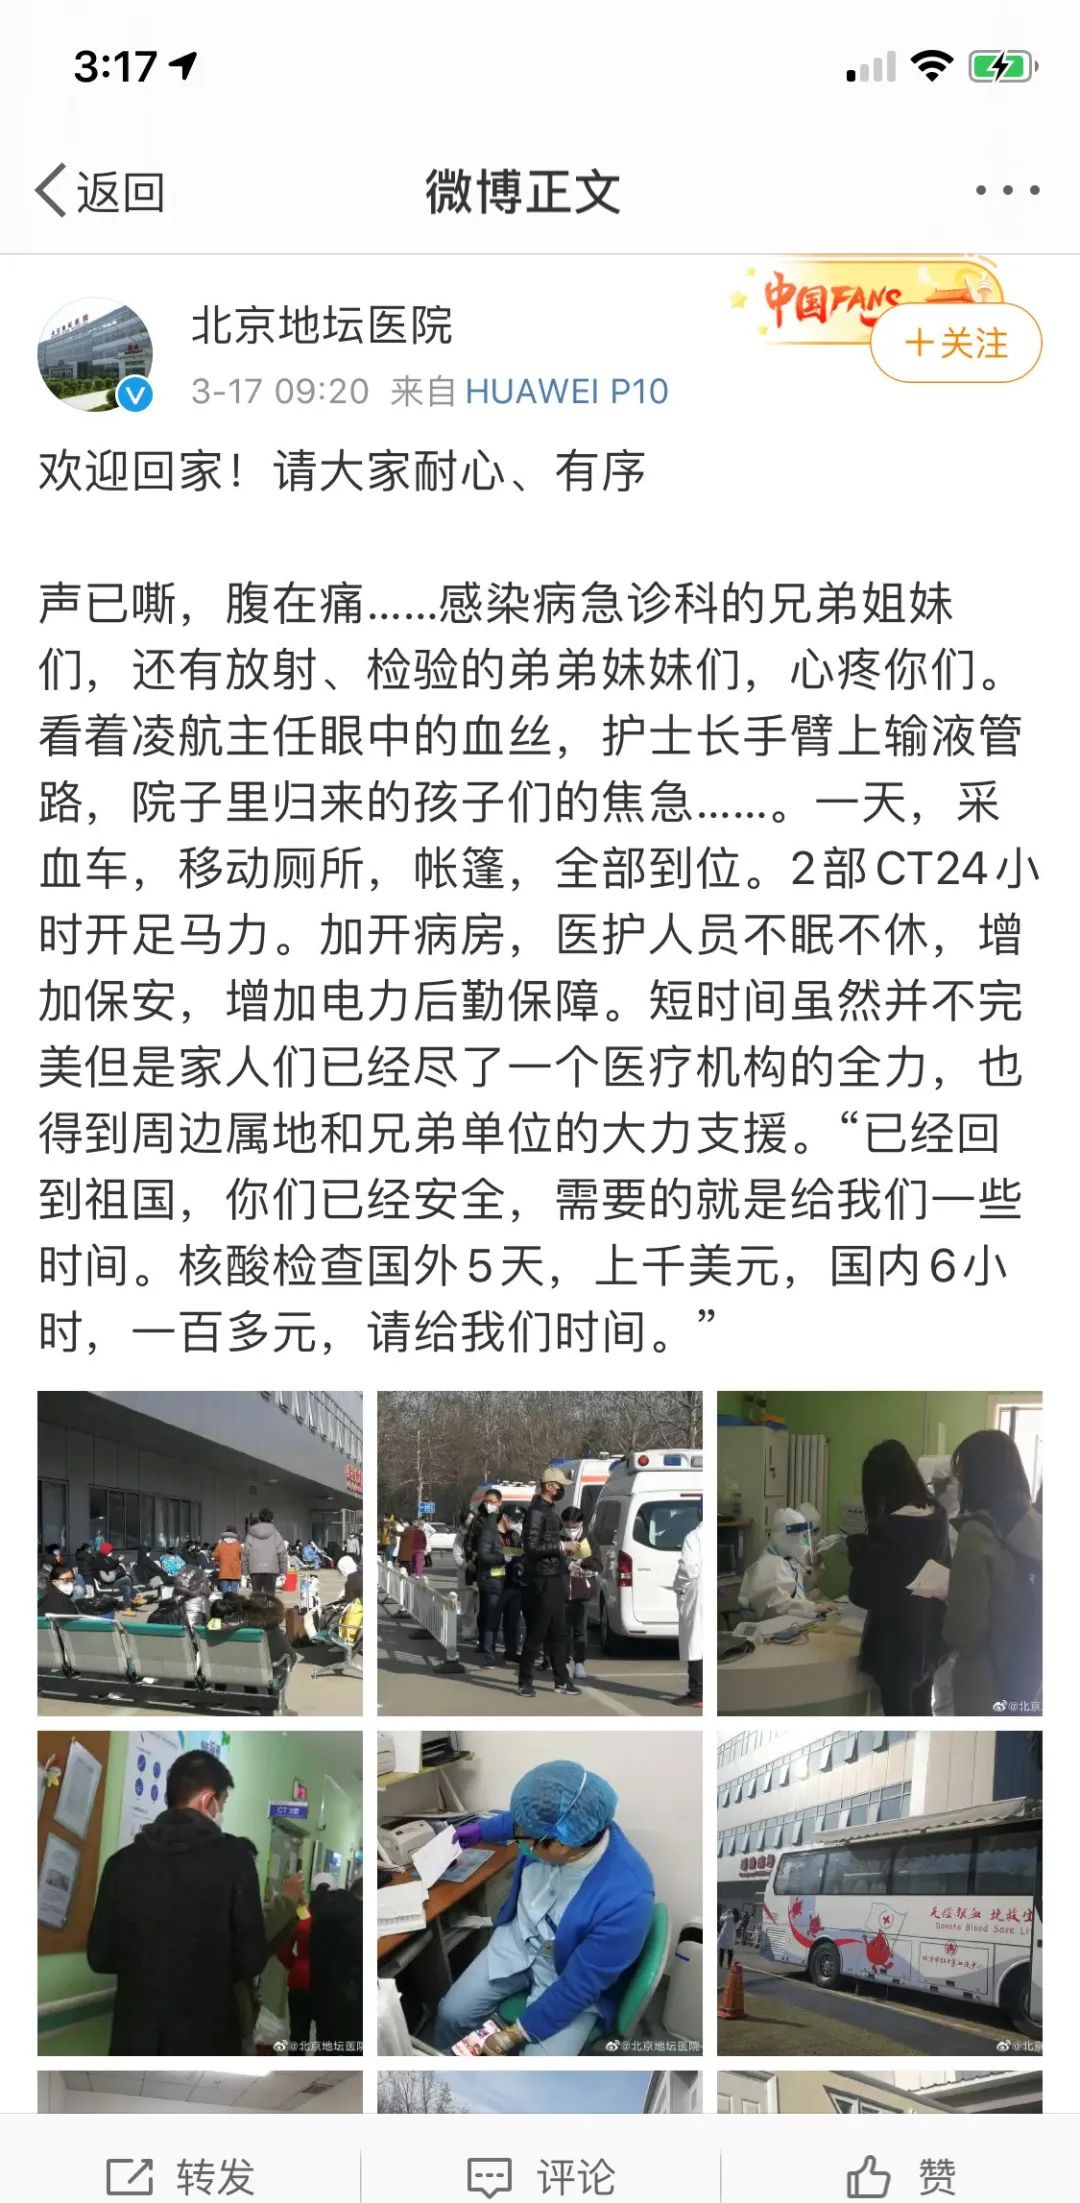 大量入境人员需要筛查 北京地坛医院告急